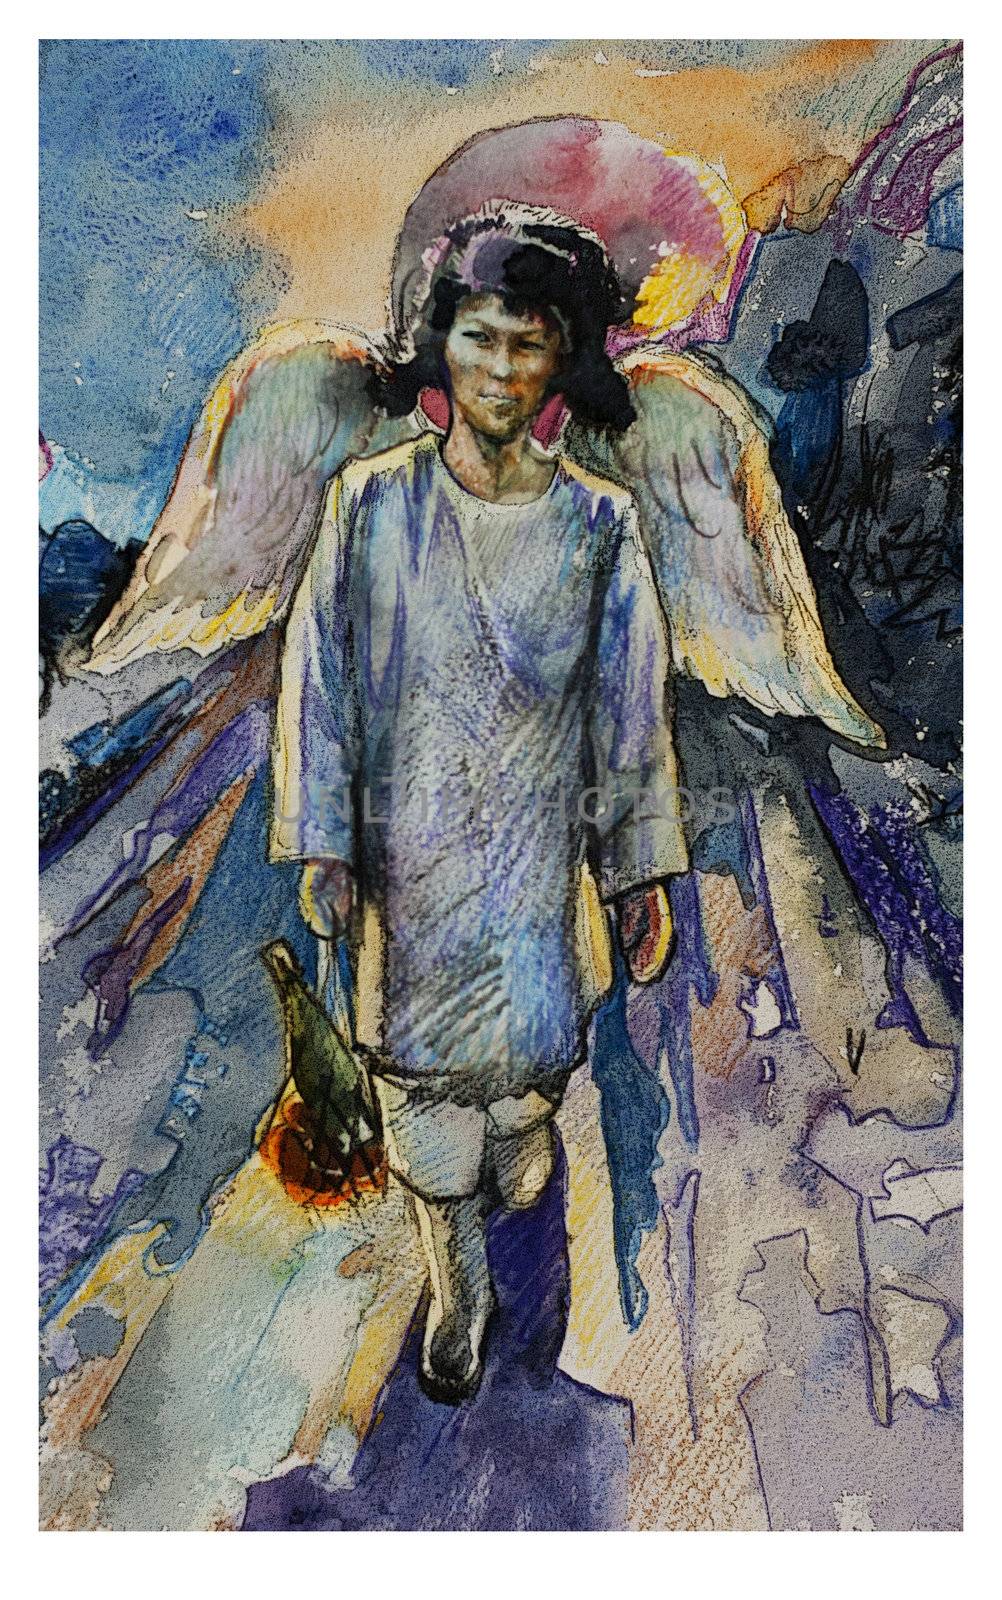 Siberian angel by nathings